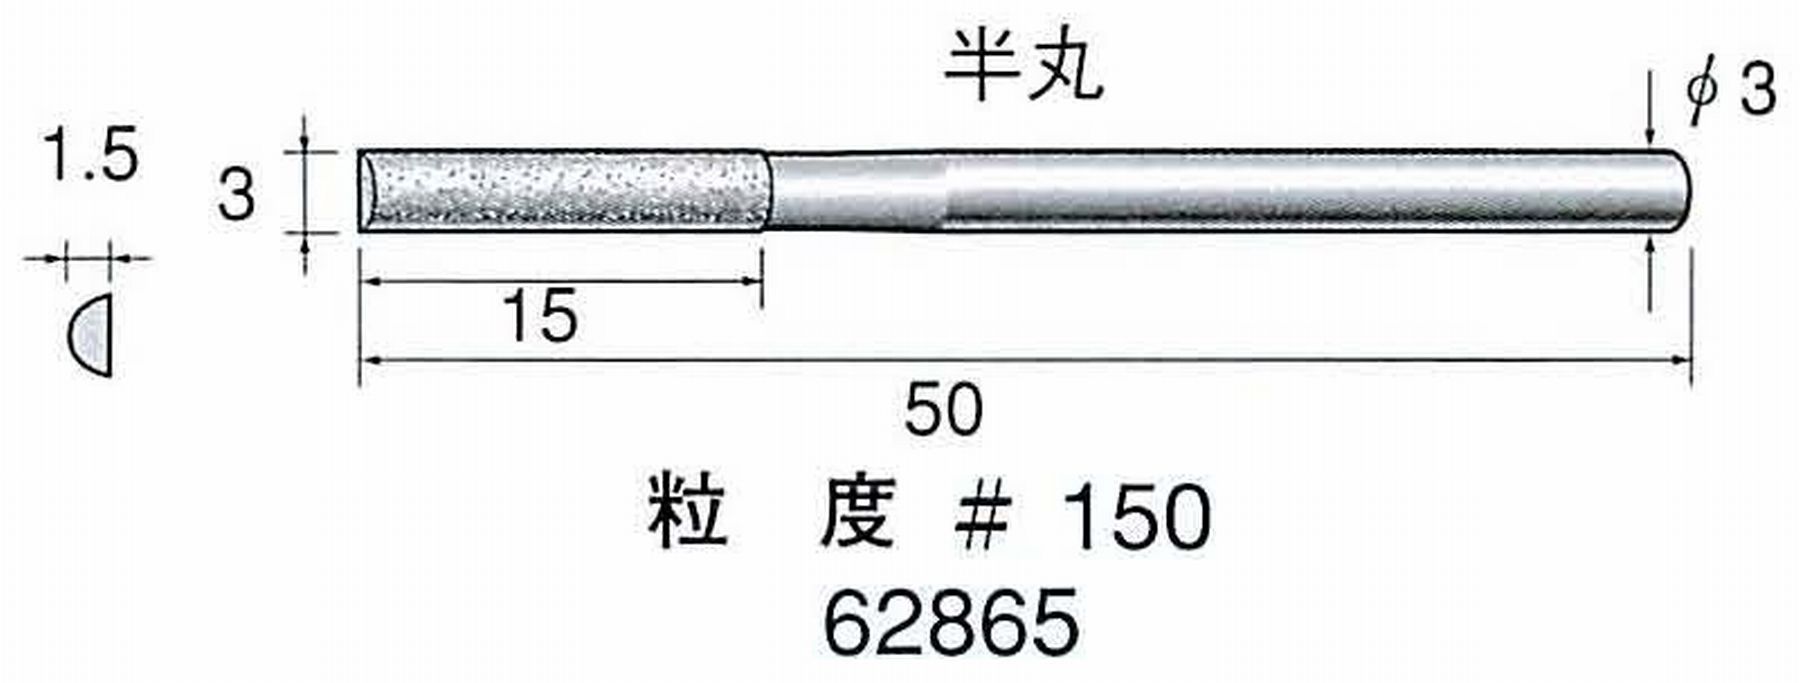 ナカニシ/NAKANISHI 電着ダイヤモンドヤスリショートタイプ 半丸 62865